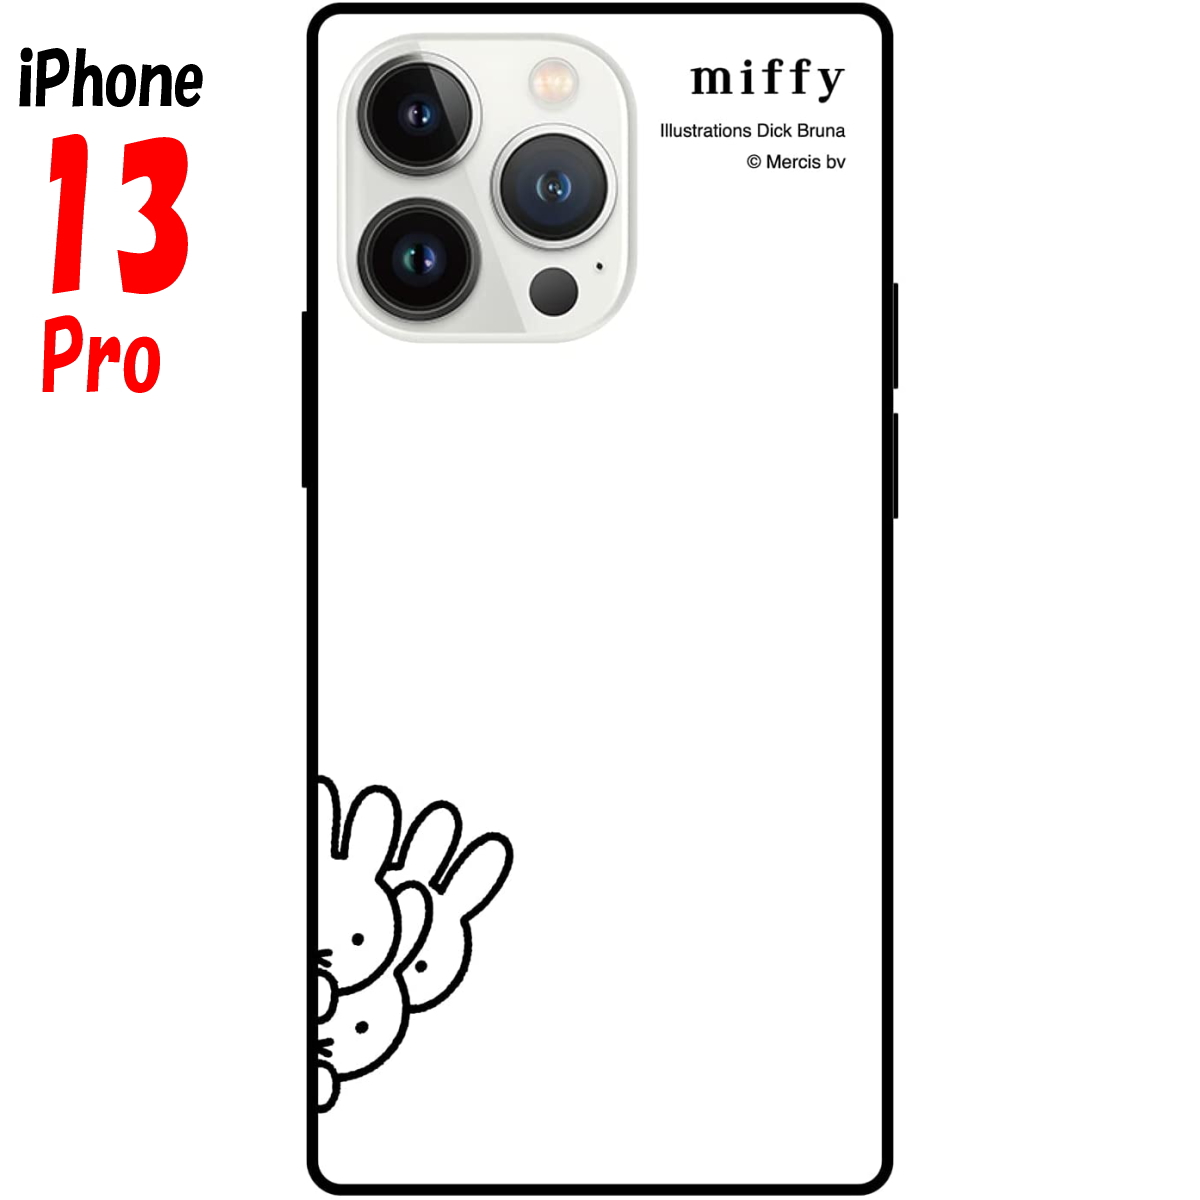 送料無料 iPhone13Proに対応するスマホケース 5☆大好評 ミッフィー iPhone13 Pro ケース スクエア 2021人気新作 MF-230WH ガラスケース グッズ ホワイト キャラクター